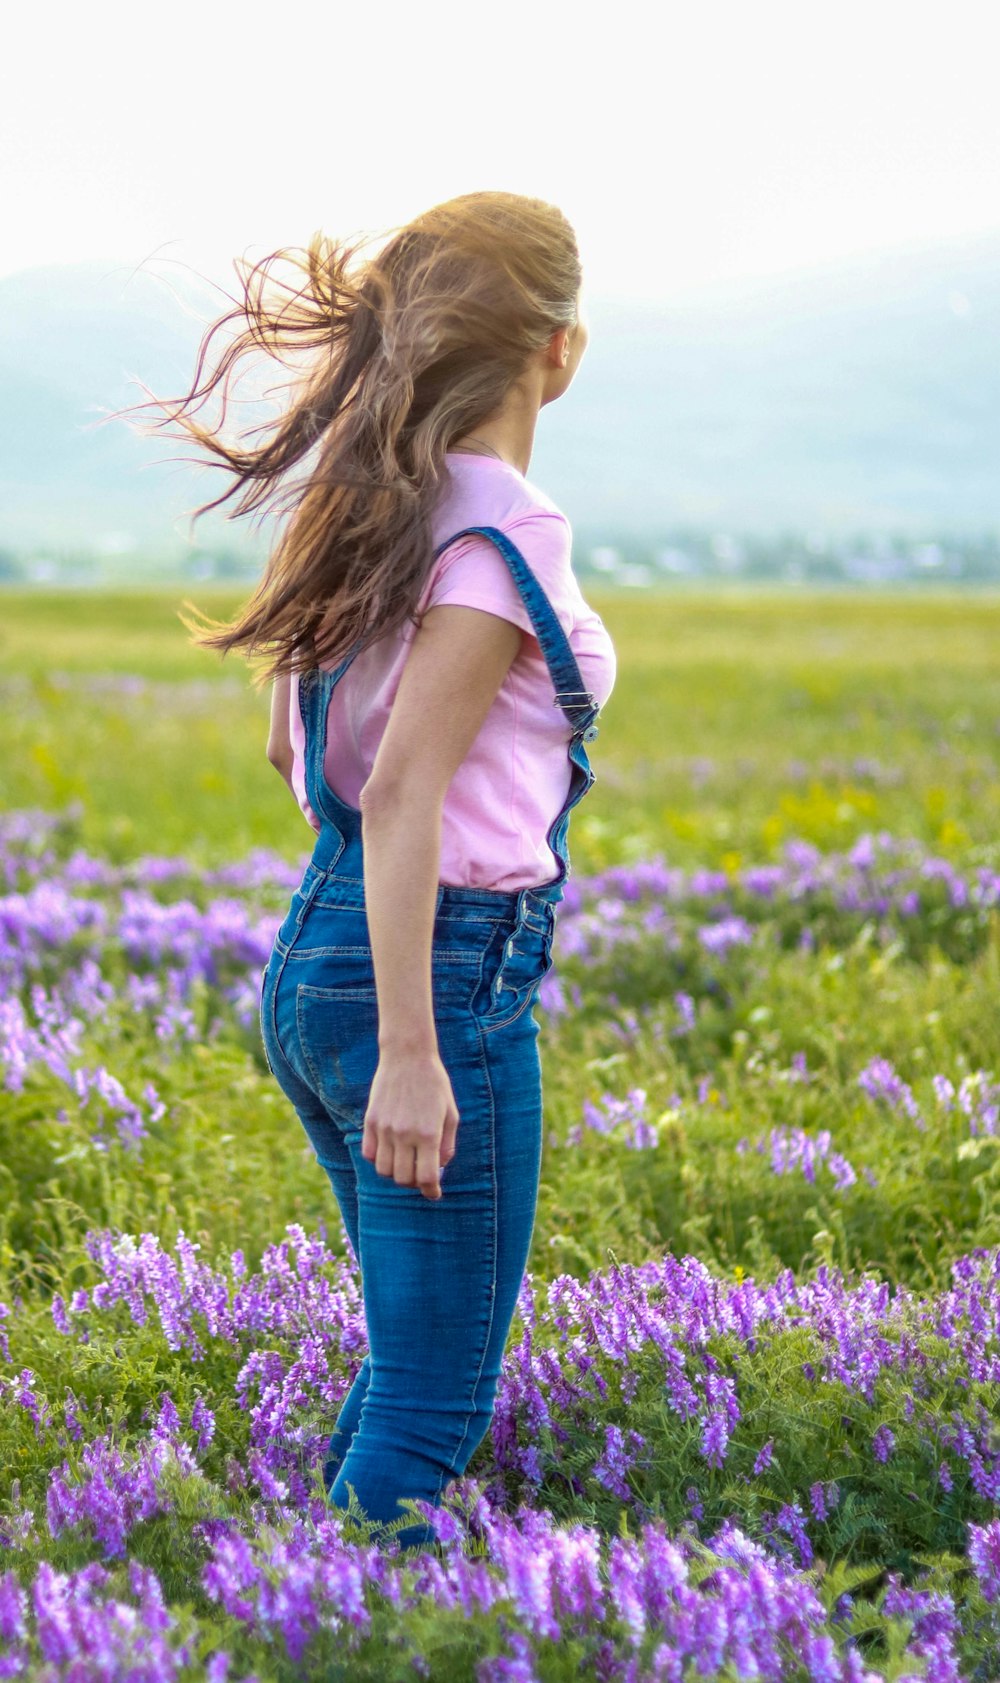 Femme en chemise blanche et jean bleu debout sur le champ de fleurs violettes pendant la journée